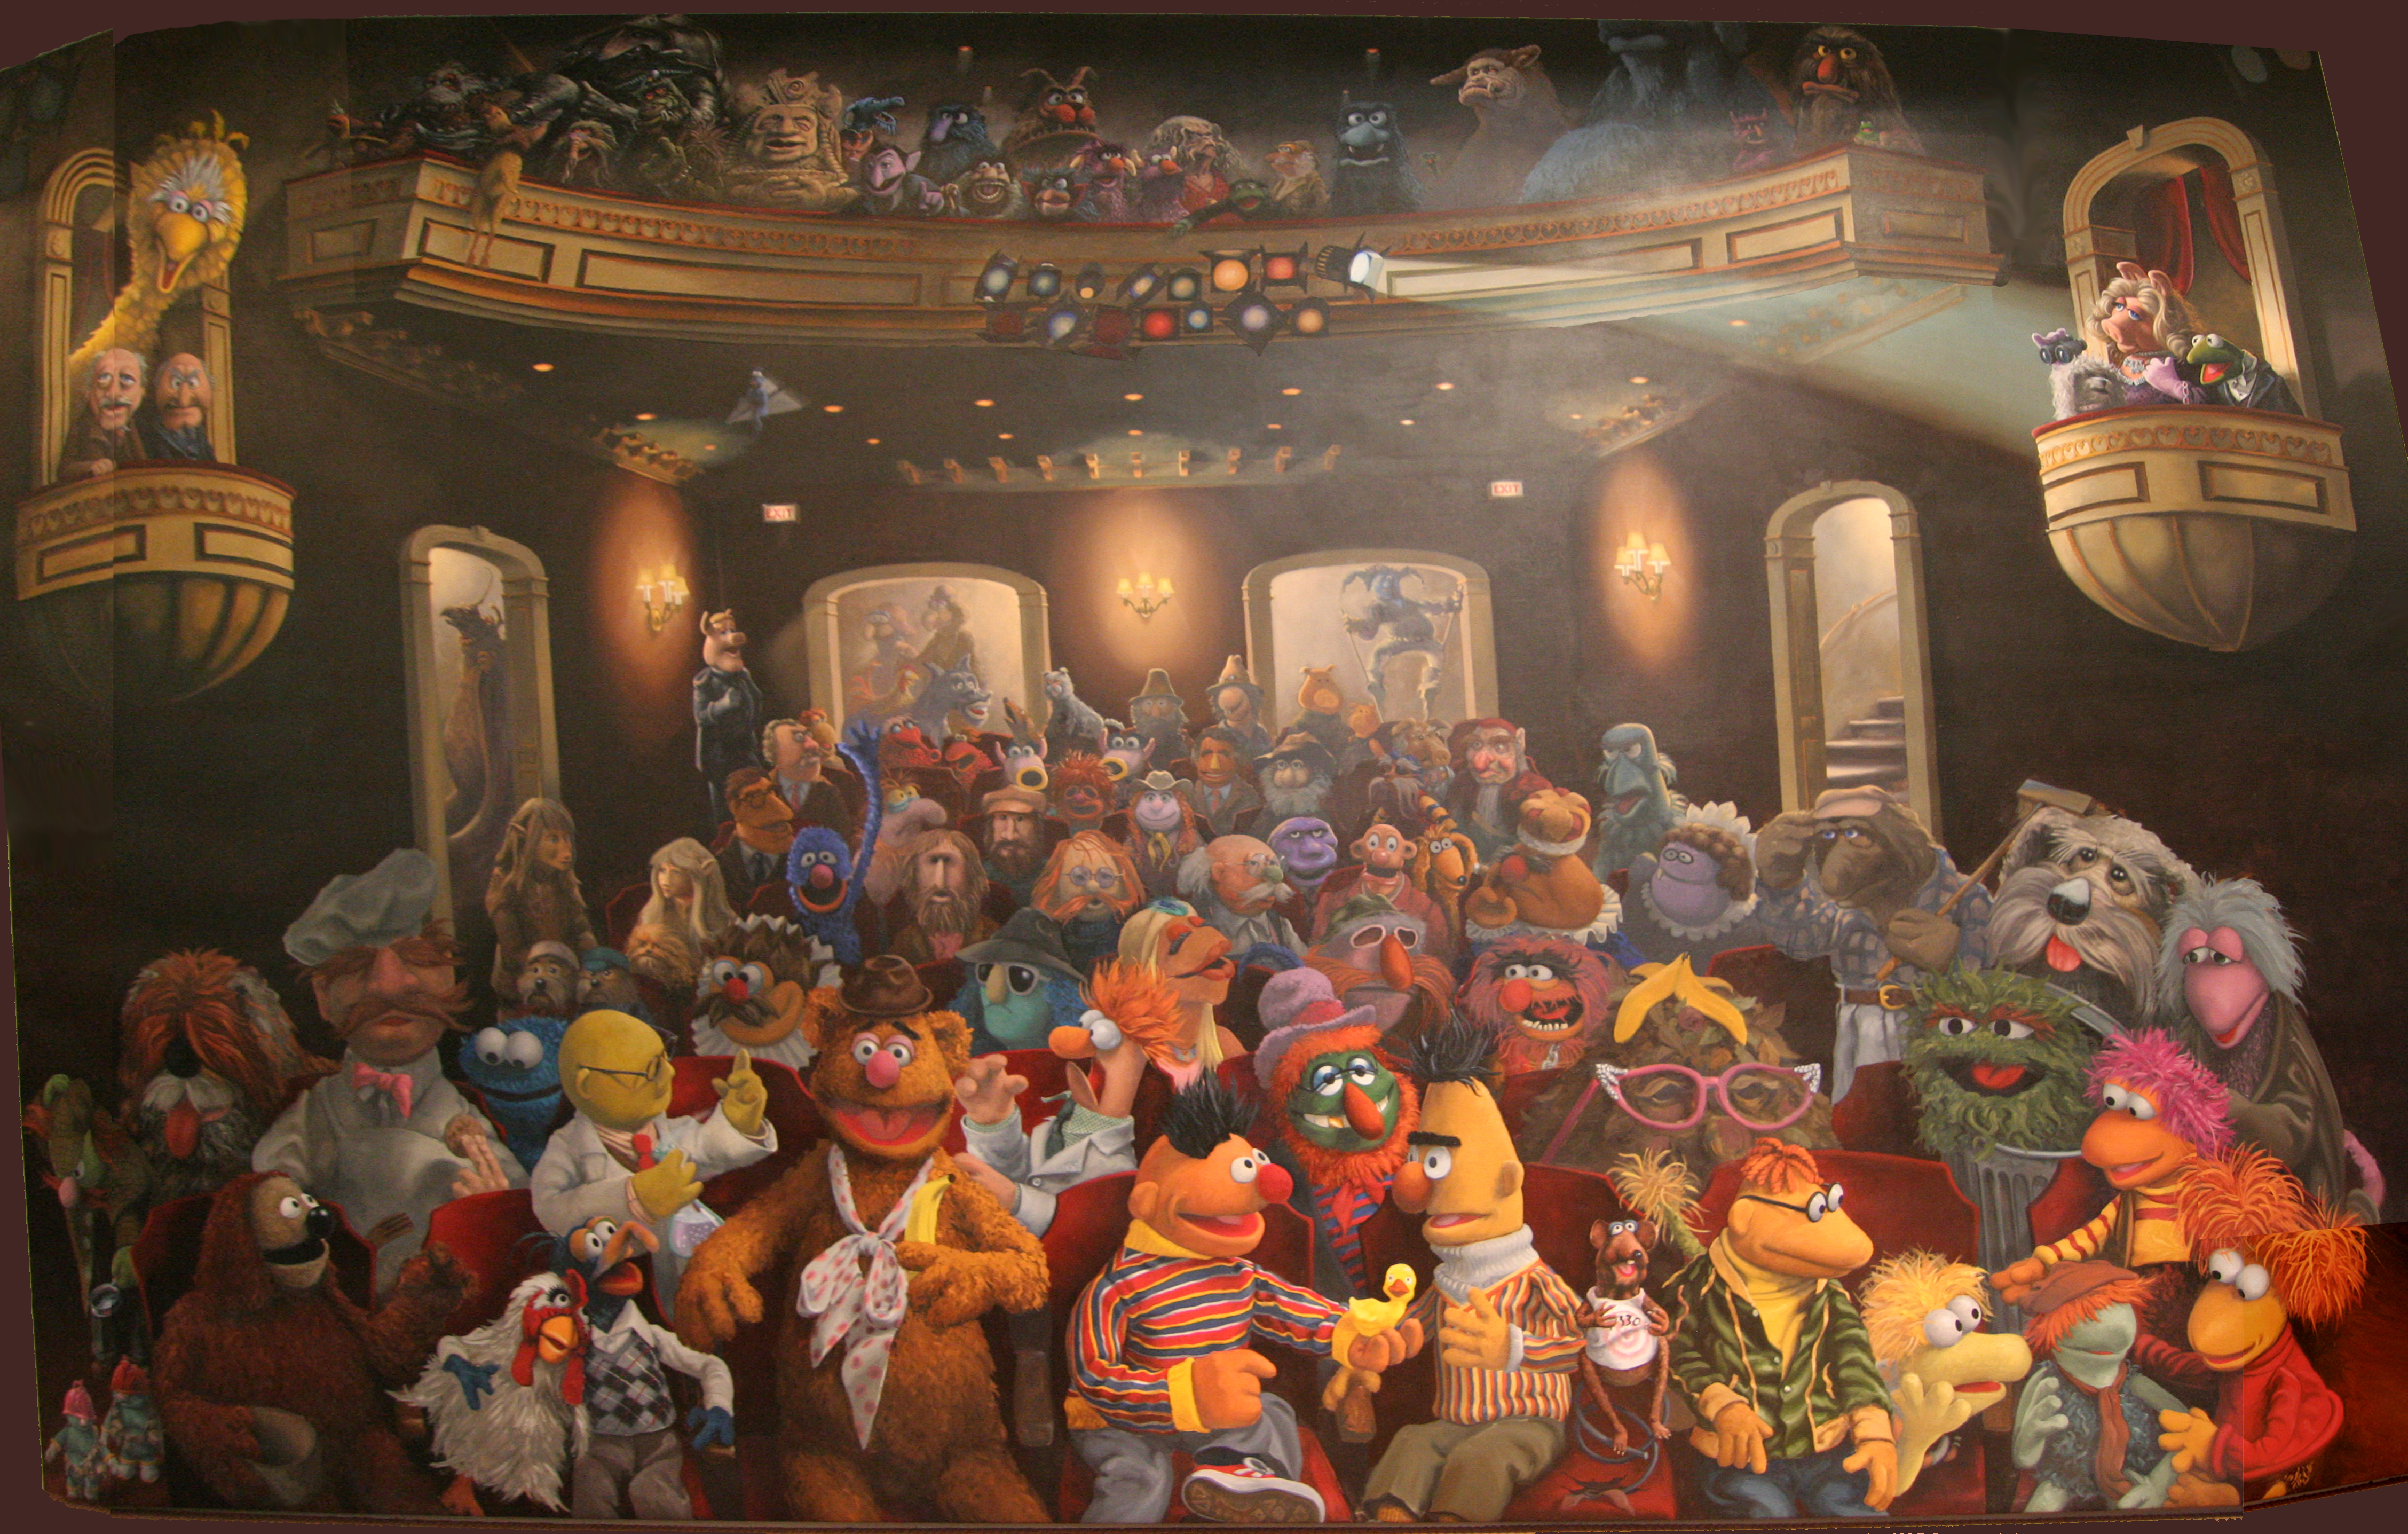 The Muppet Show Puter Wallpaper Desktop Background